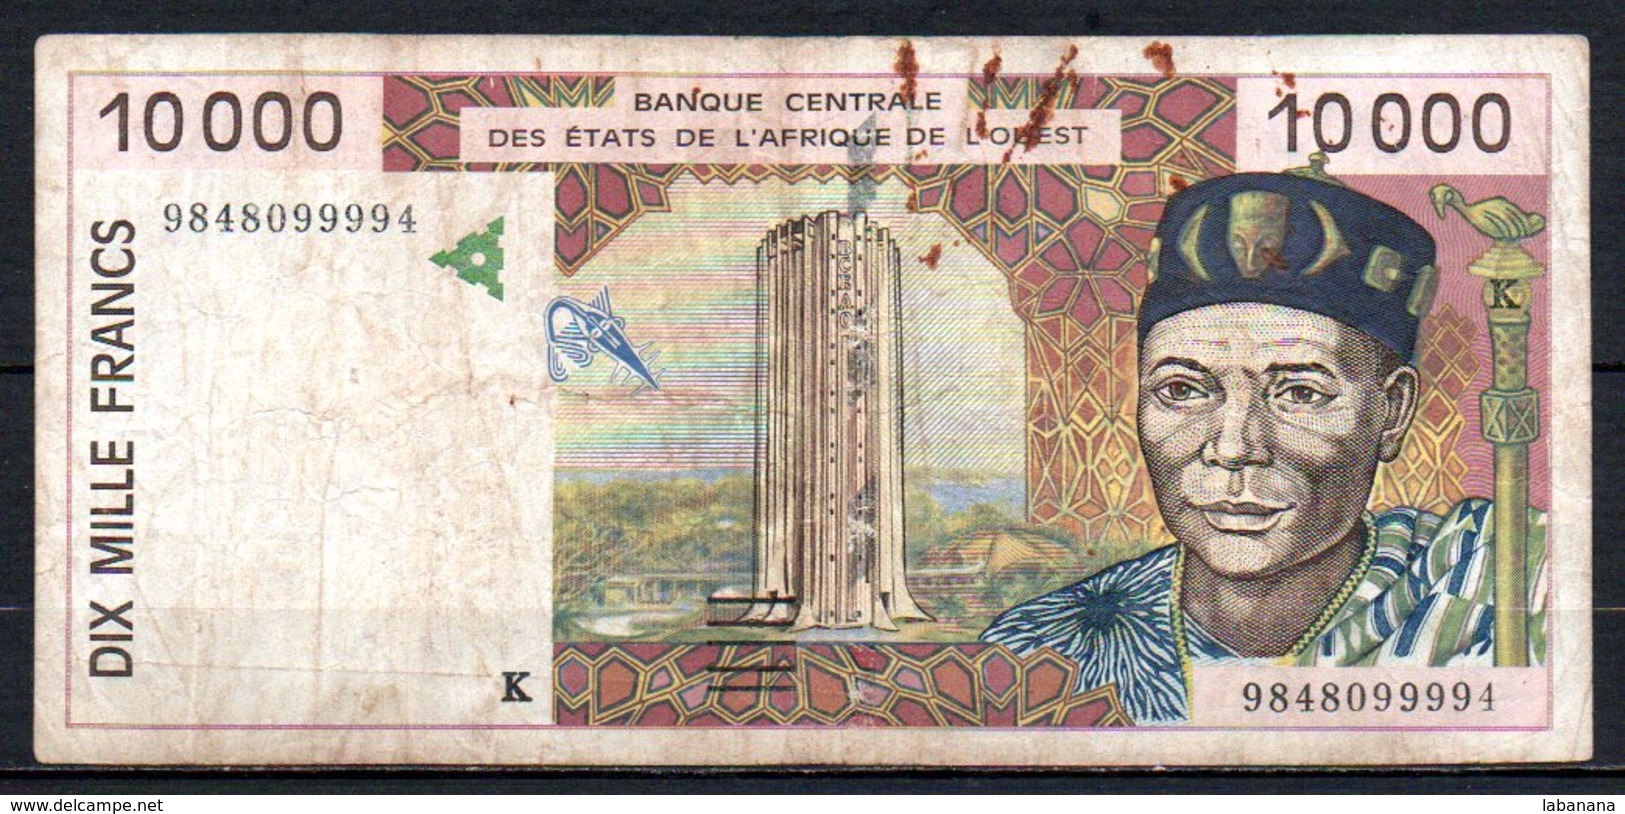 624-Sénégal Billet De 10 000 Francs 1998 K984 - Sénégal